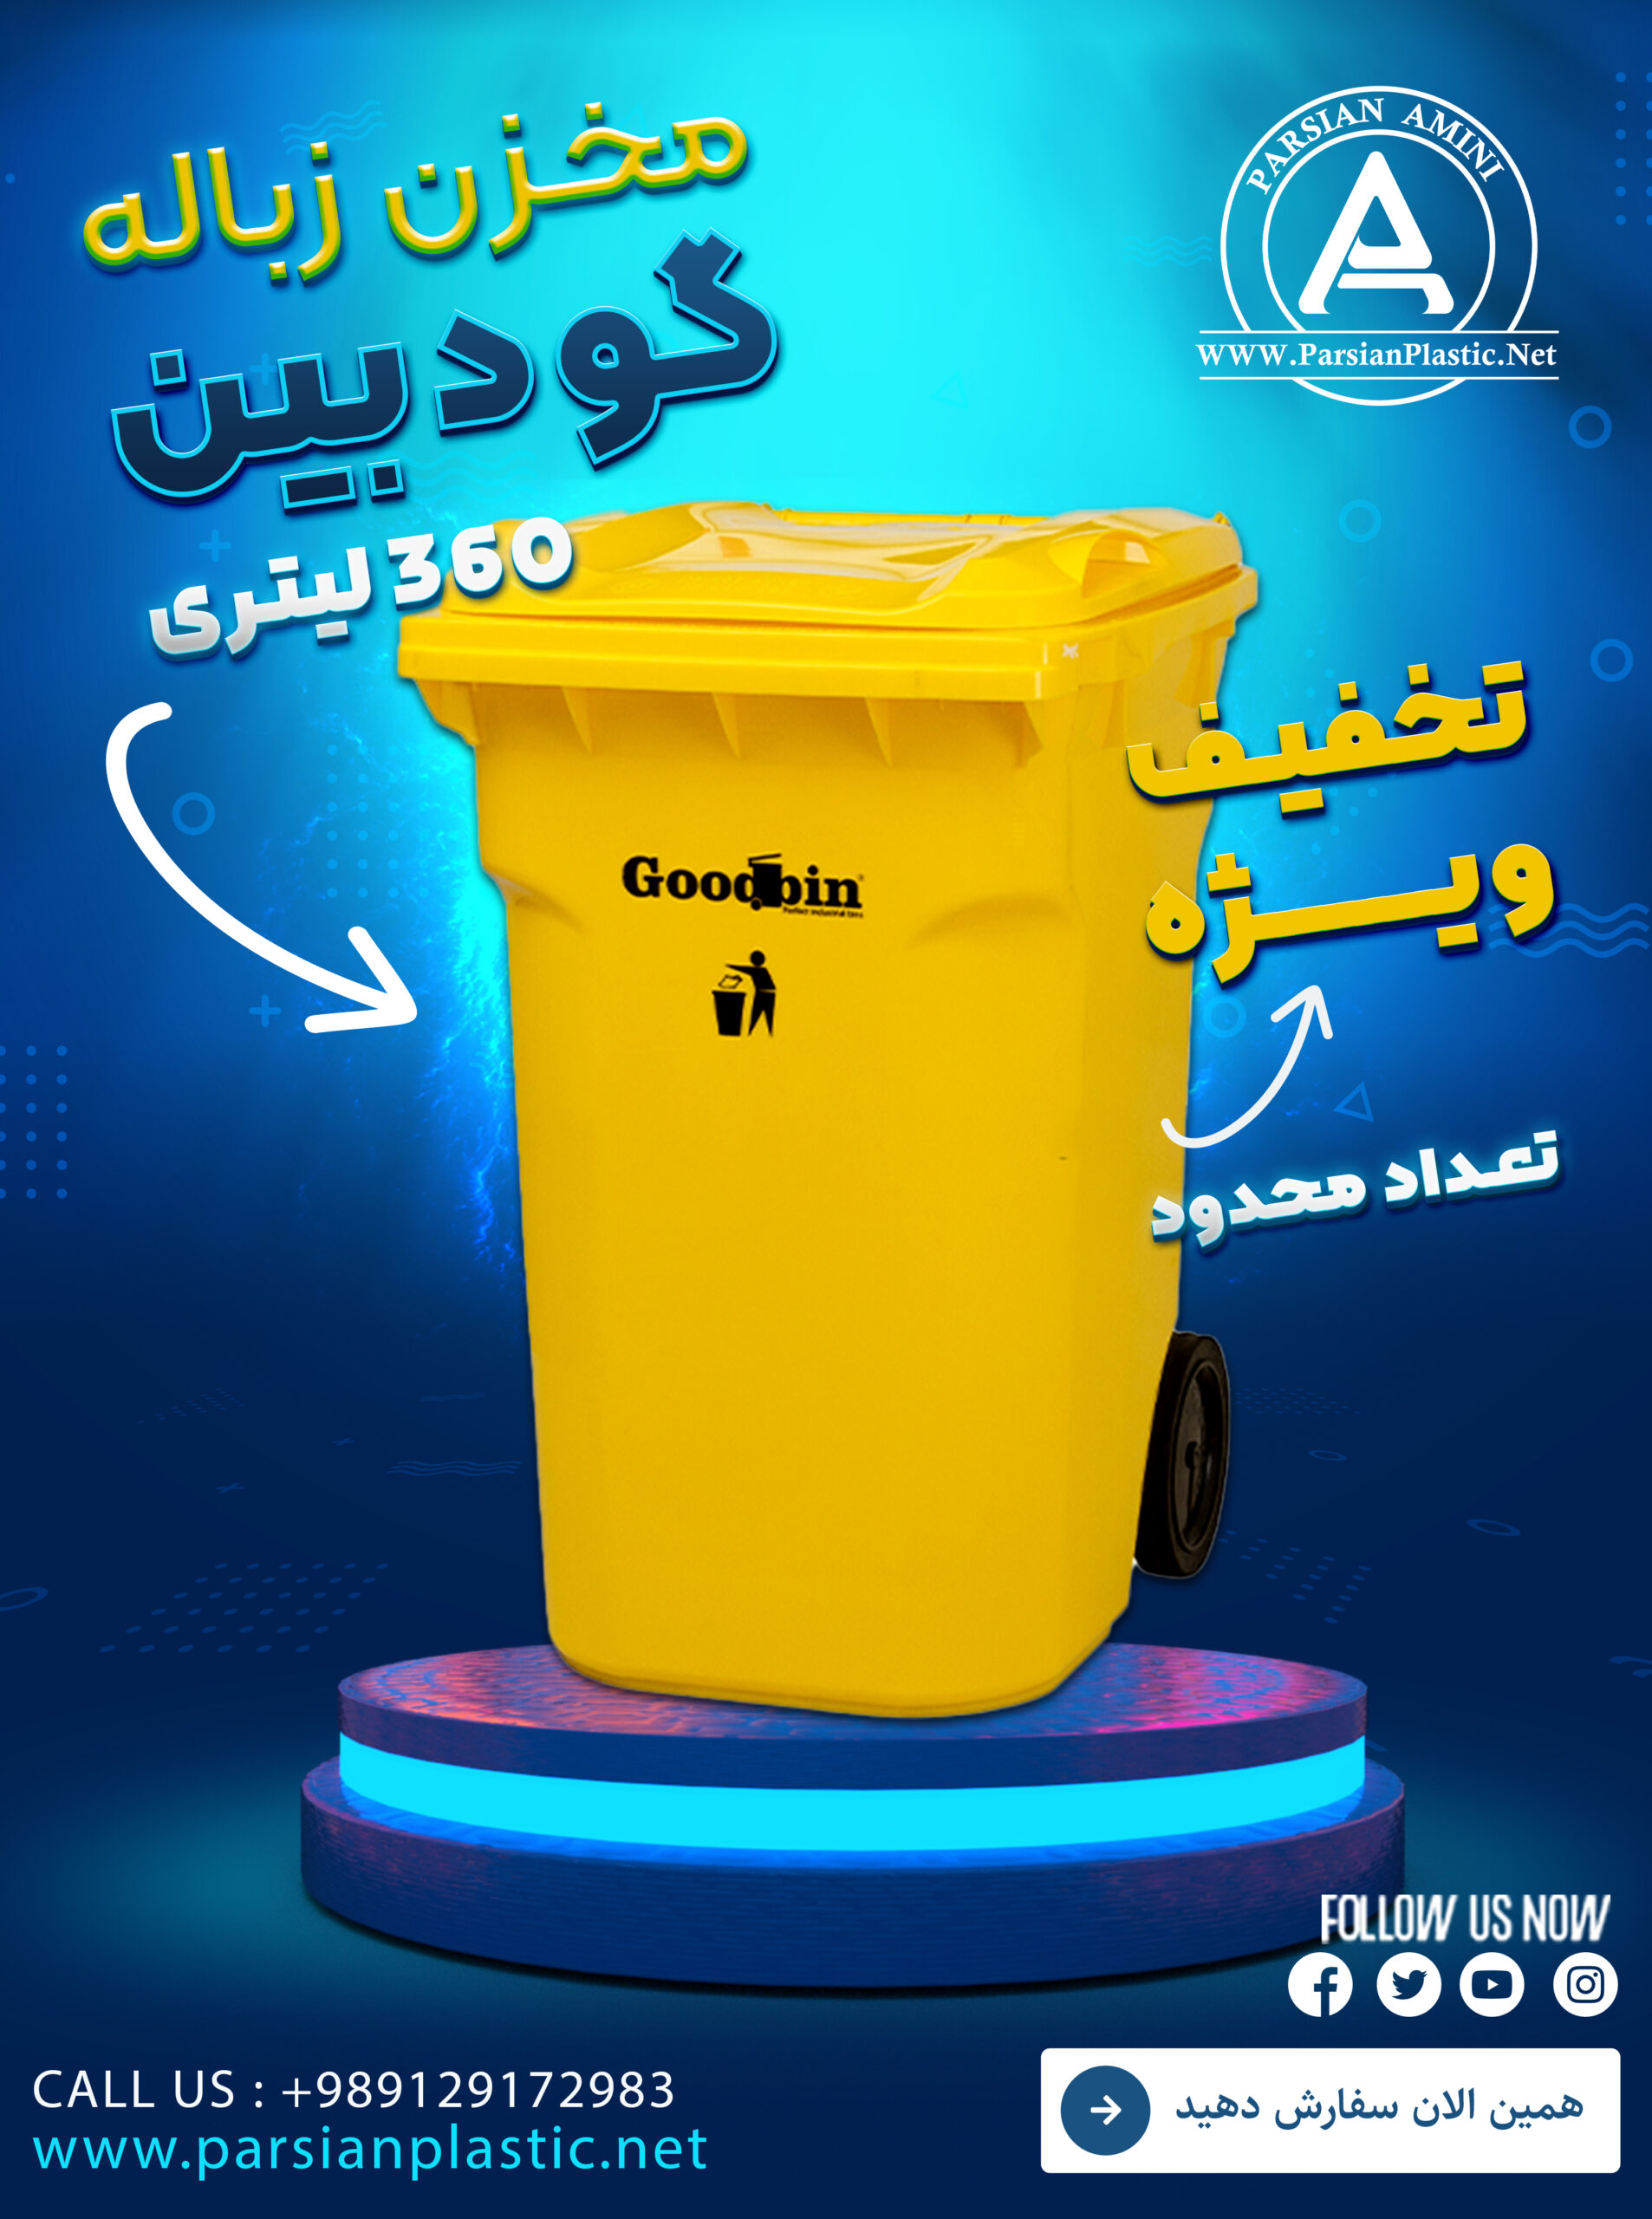 مخزن زباله 360 لیتری گودبین خاوران صالح اباد